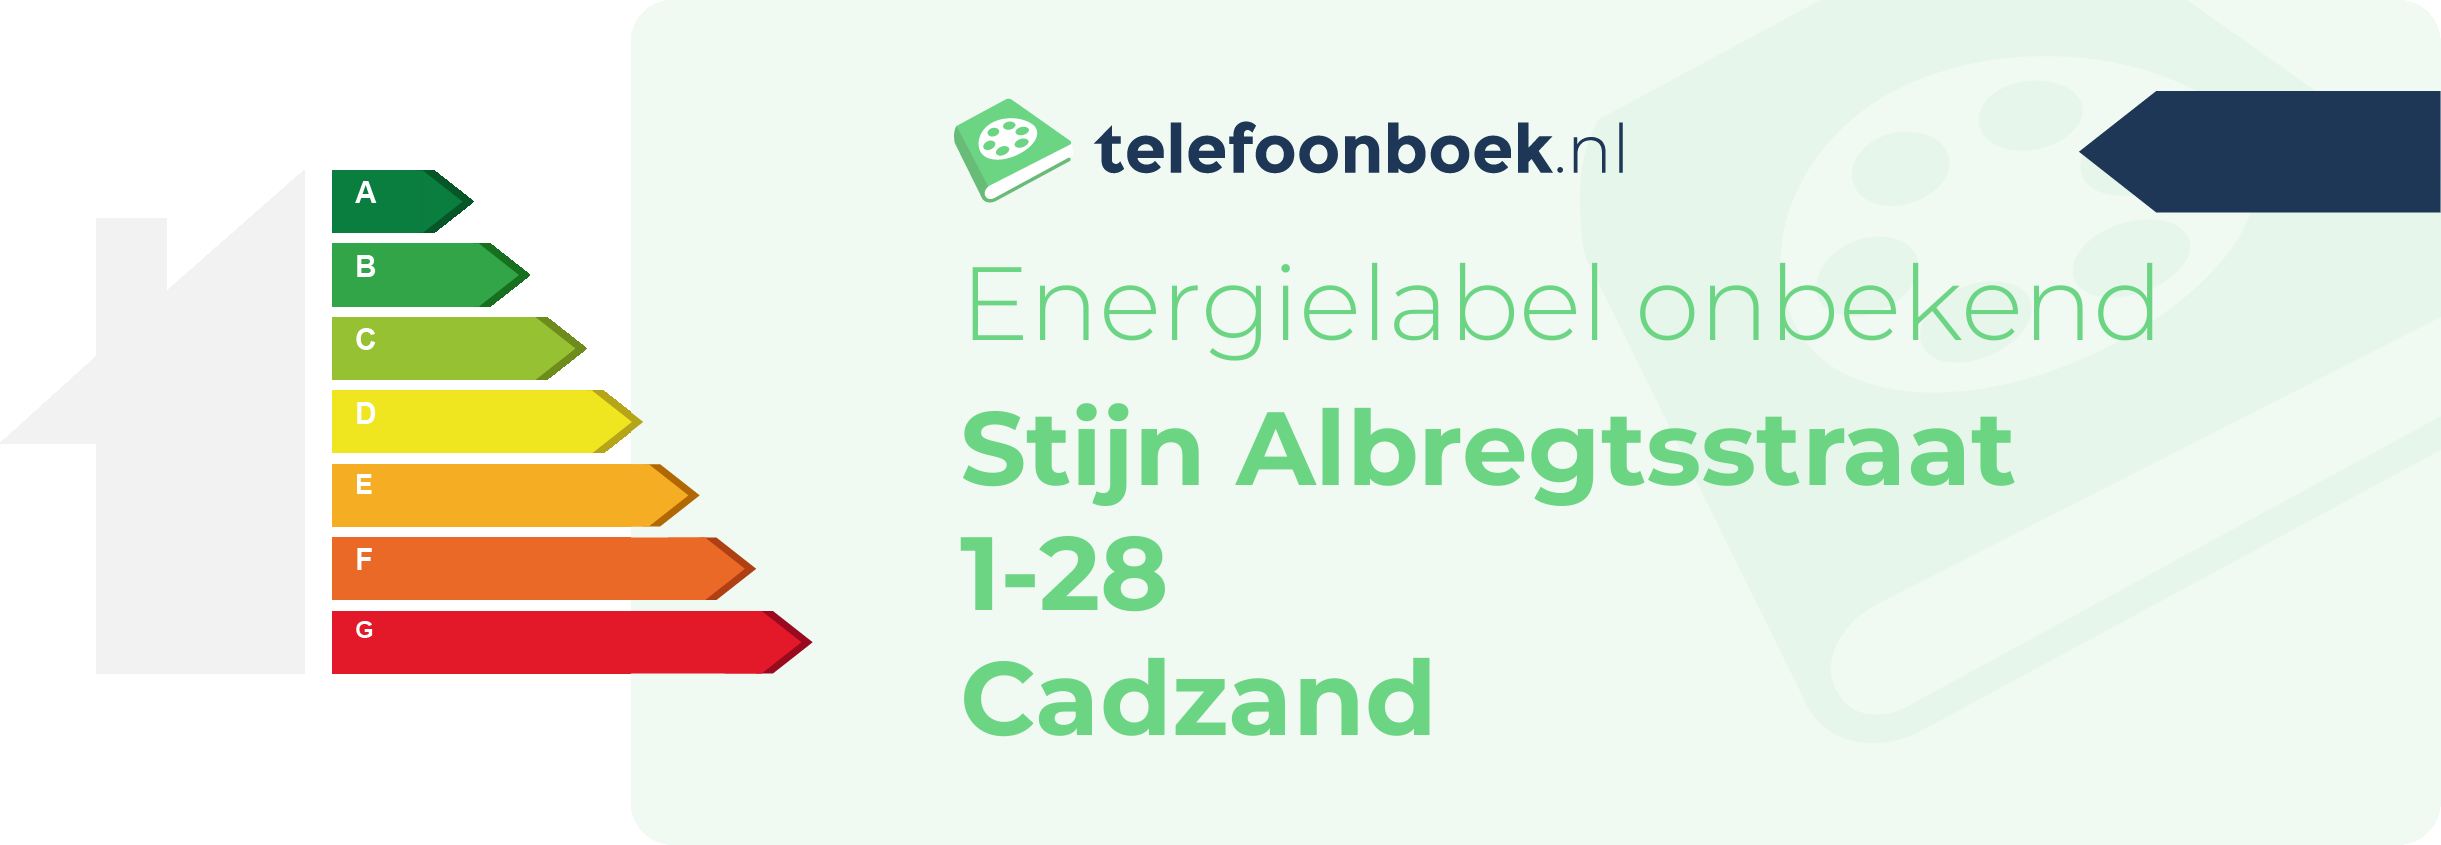 Energielabel Stijn Albregtsstraat 1-28 Cadzand